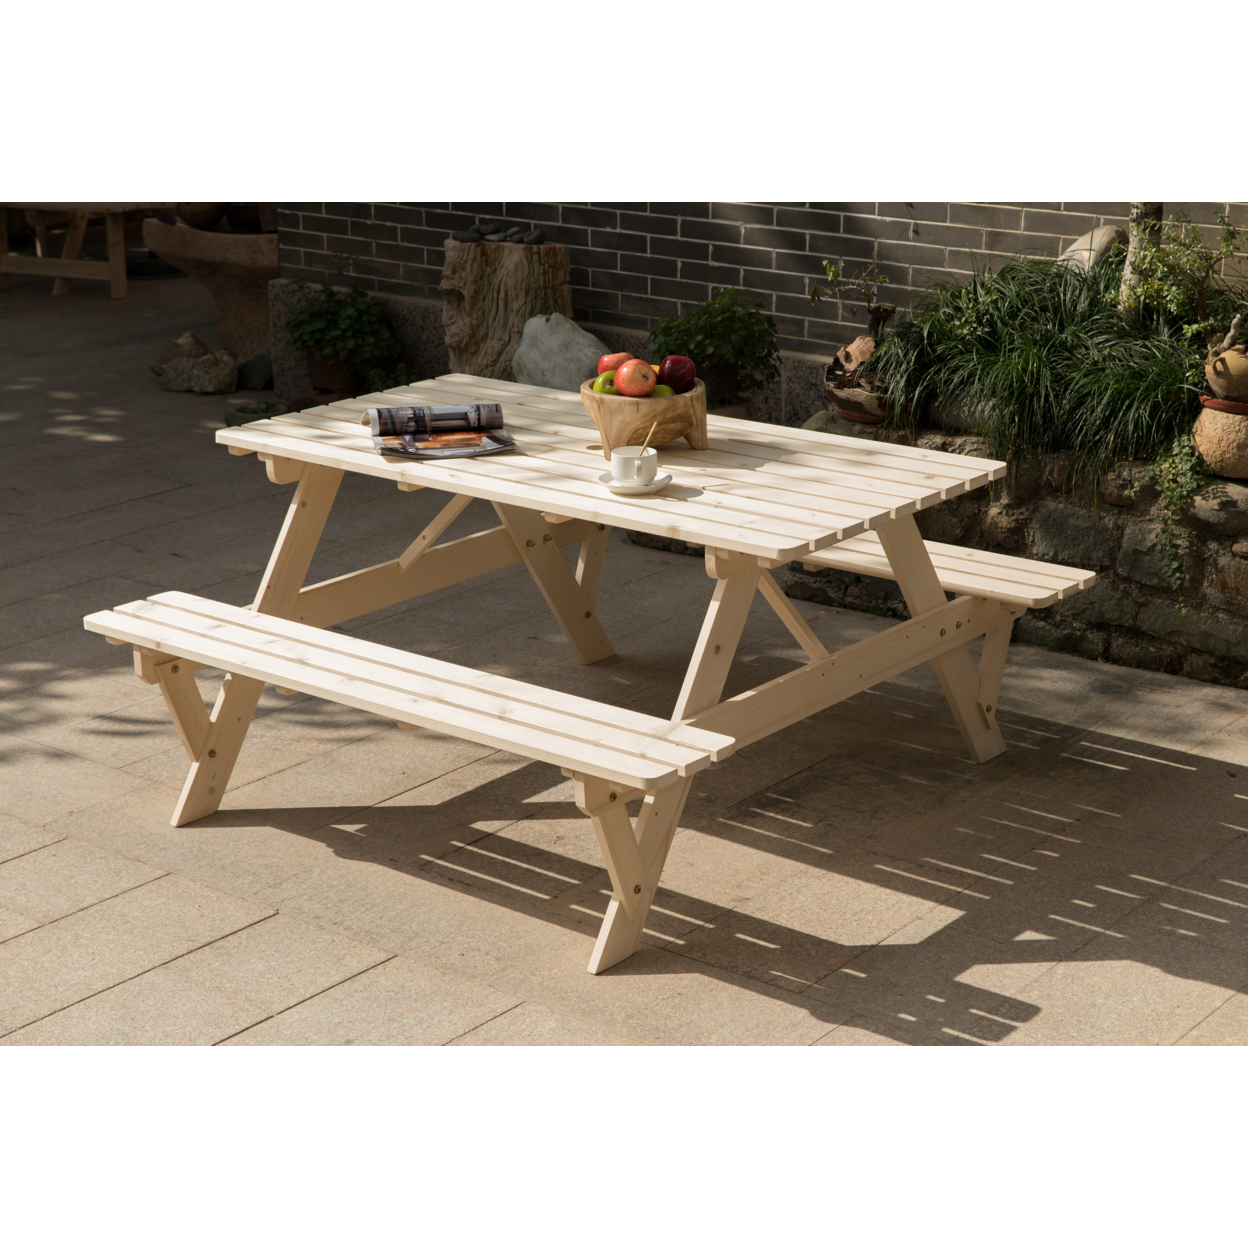 Outdoor Wooden Patio Deck Garden 6-Person Picnic Table, For Backyard, Garden - Natural